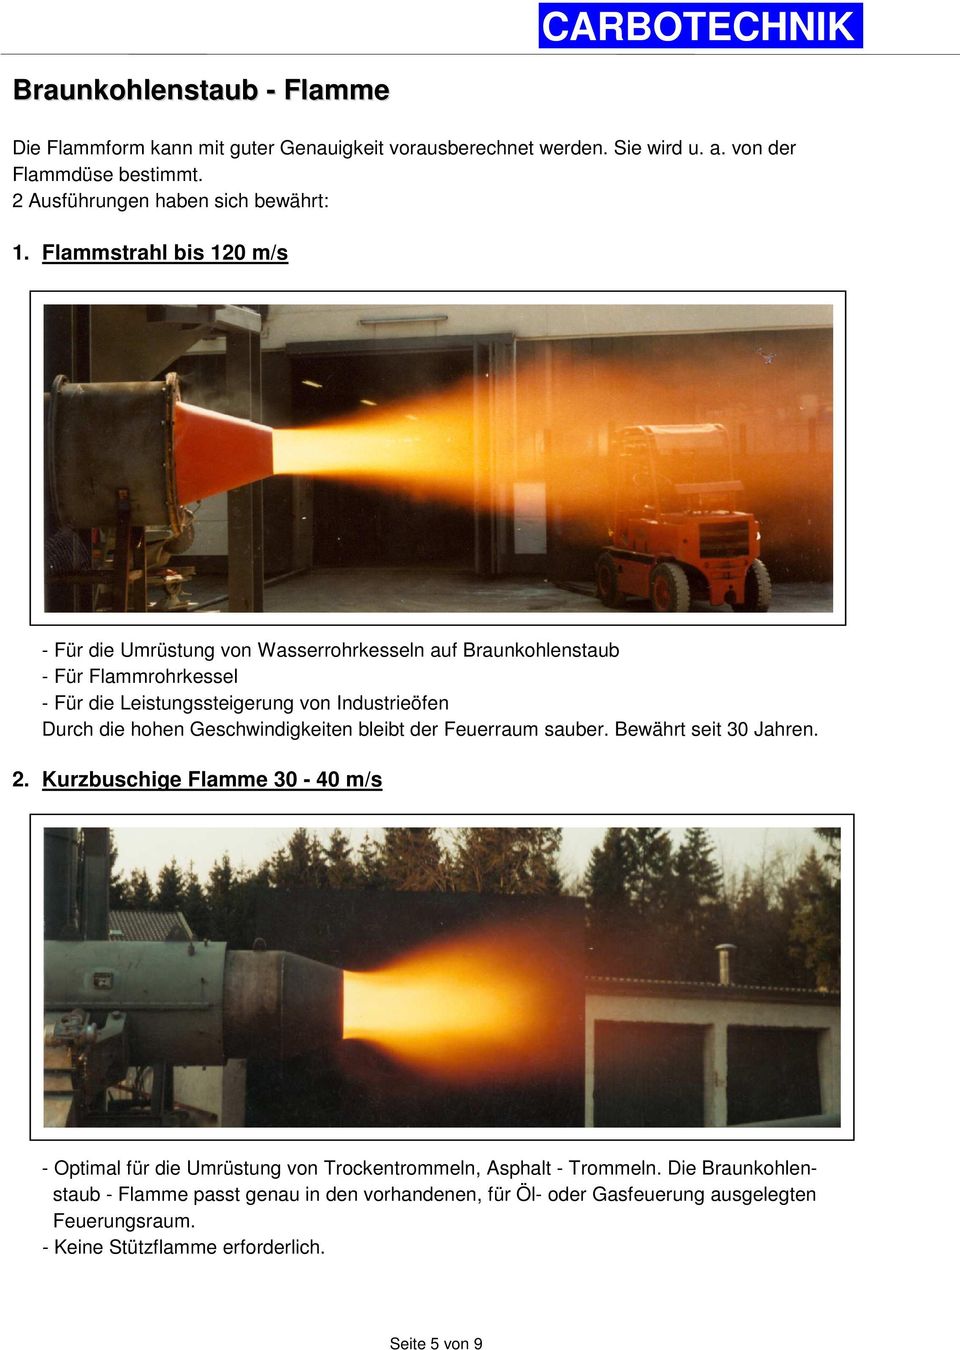 Flammstrahl bis 120 m/s - Für die Umrüstung von Wasserrohrkesseln auf Braunkohlenstaub - Für Flammrohrkessel - Für die Leistungssteigerung von Industrieöfen Durch die